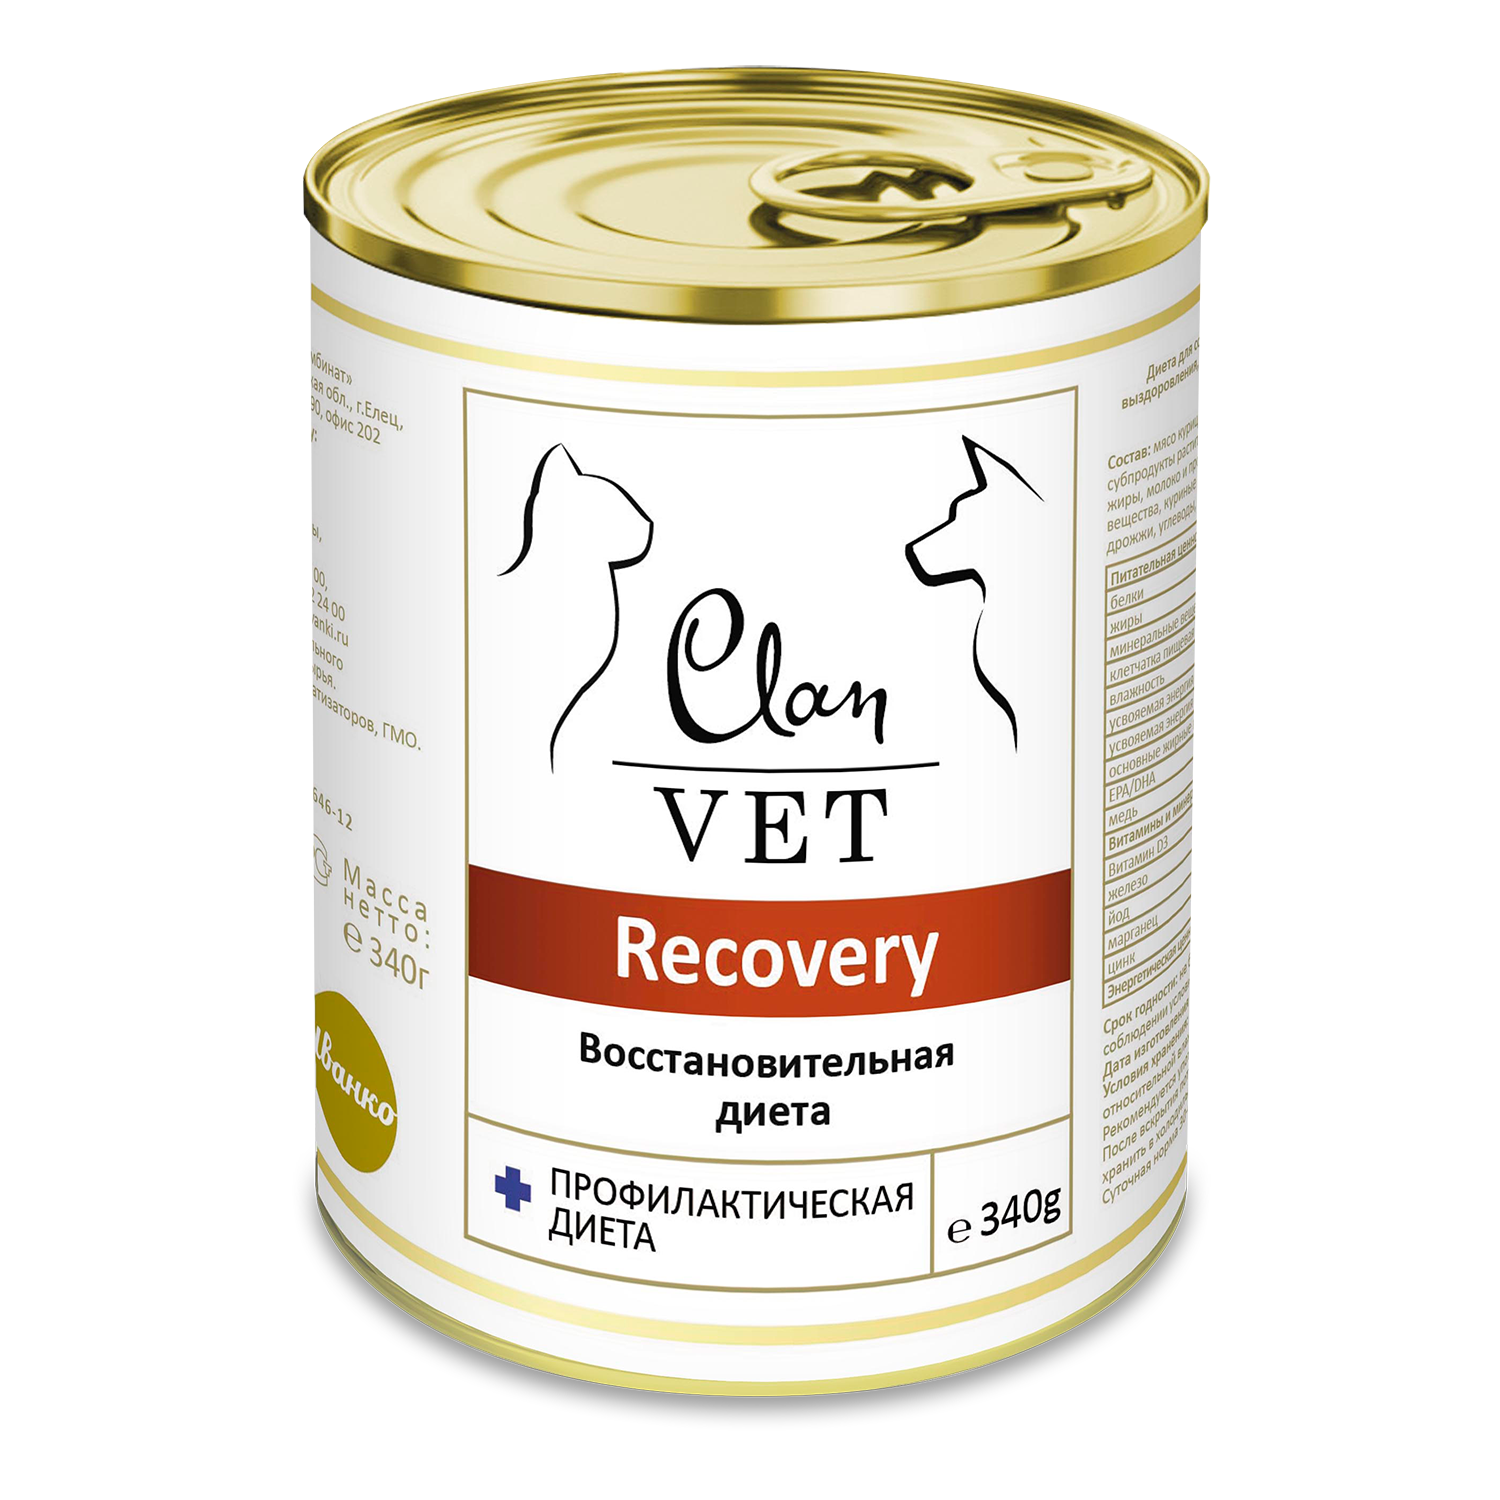 Корм для собак и кошек Clan vet recovery восстановительная диета диетические консервы 340г - фото 1